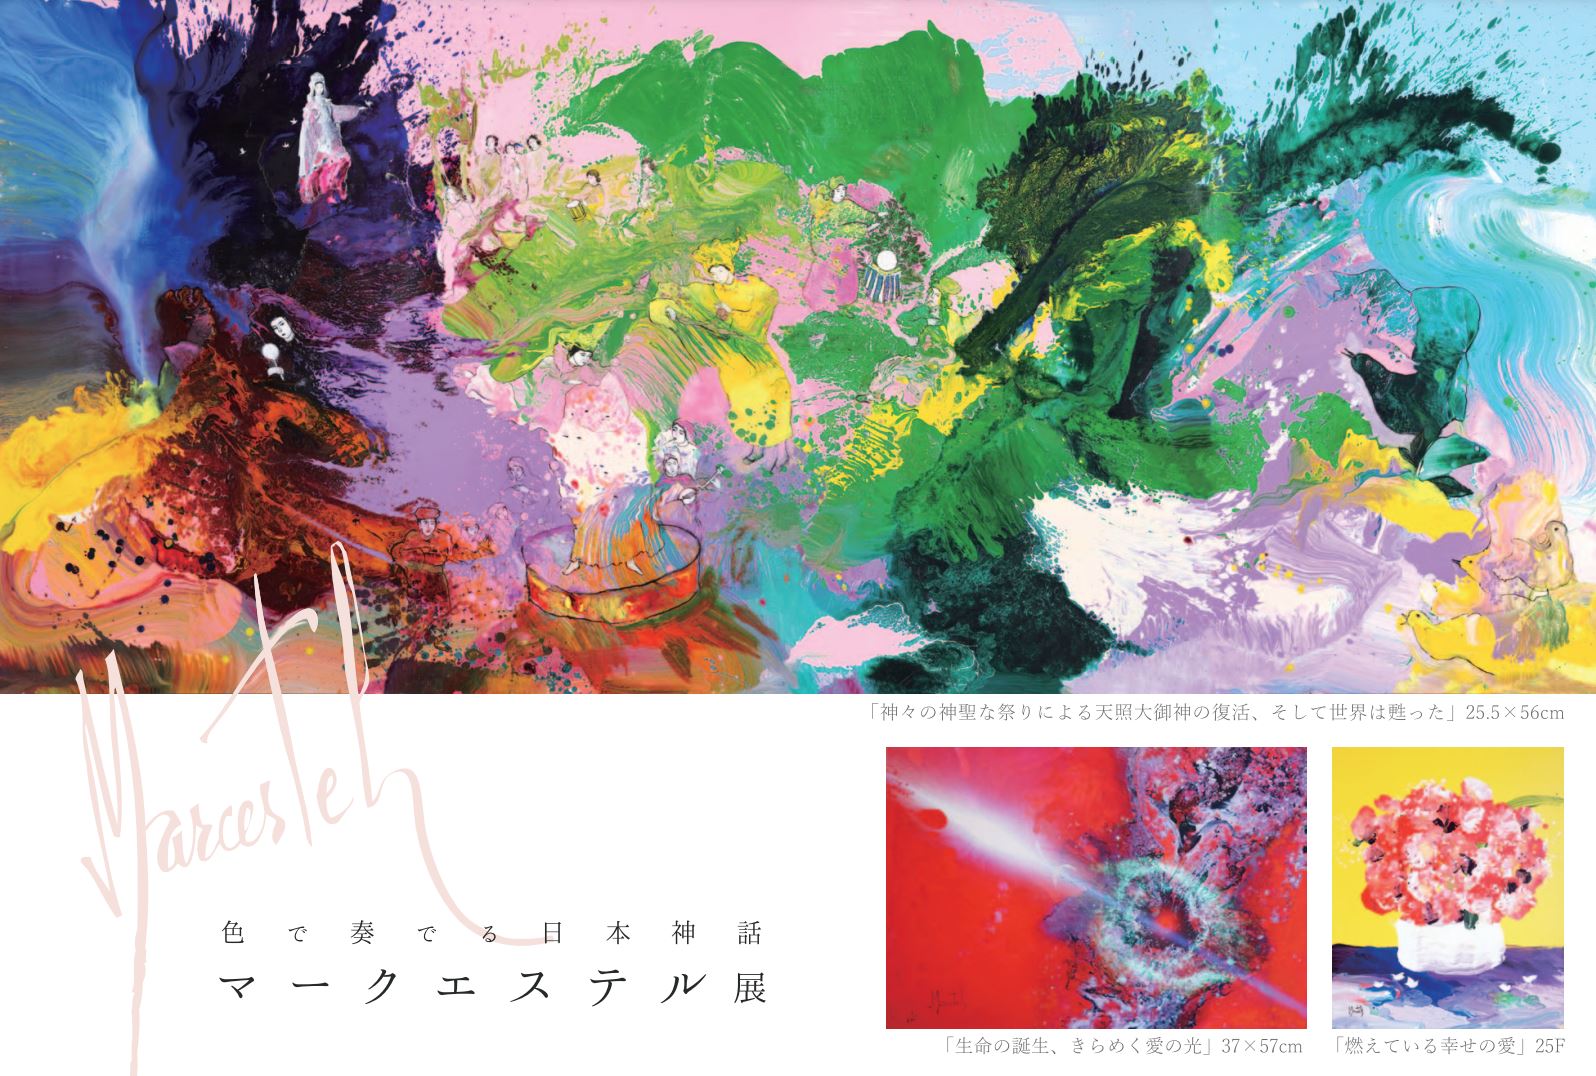 色で奏でる日本神話 マークエステル展 | ArkCorporation